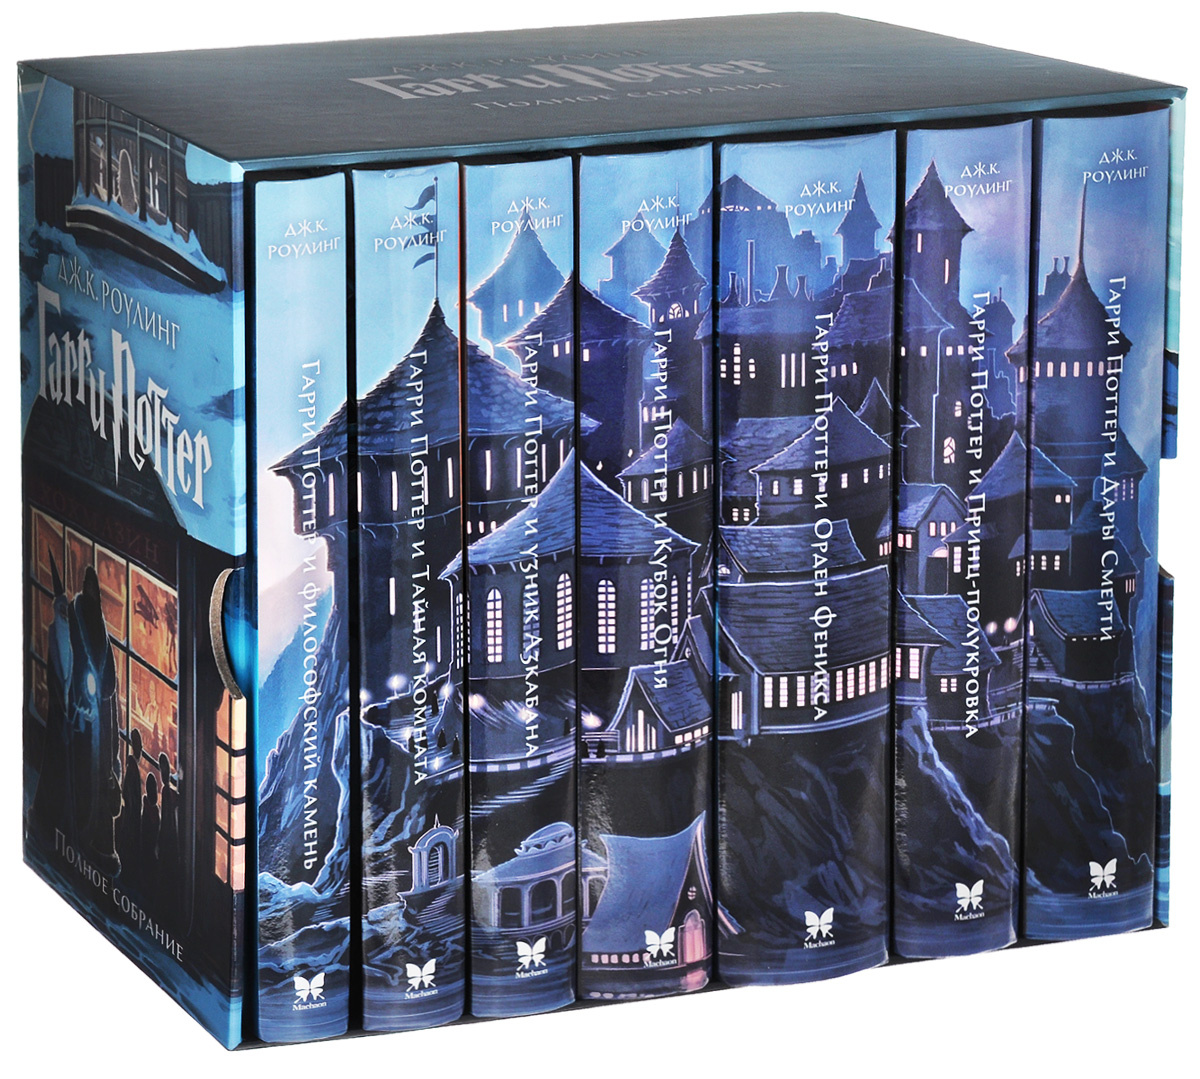 Гарри Поттер. Полное собрание (комплект из 7 книг) | Роулинг Джоан Кэтлин  #1